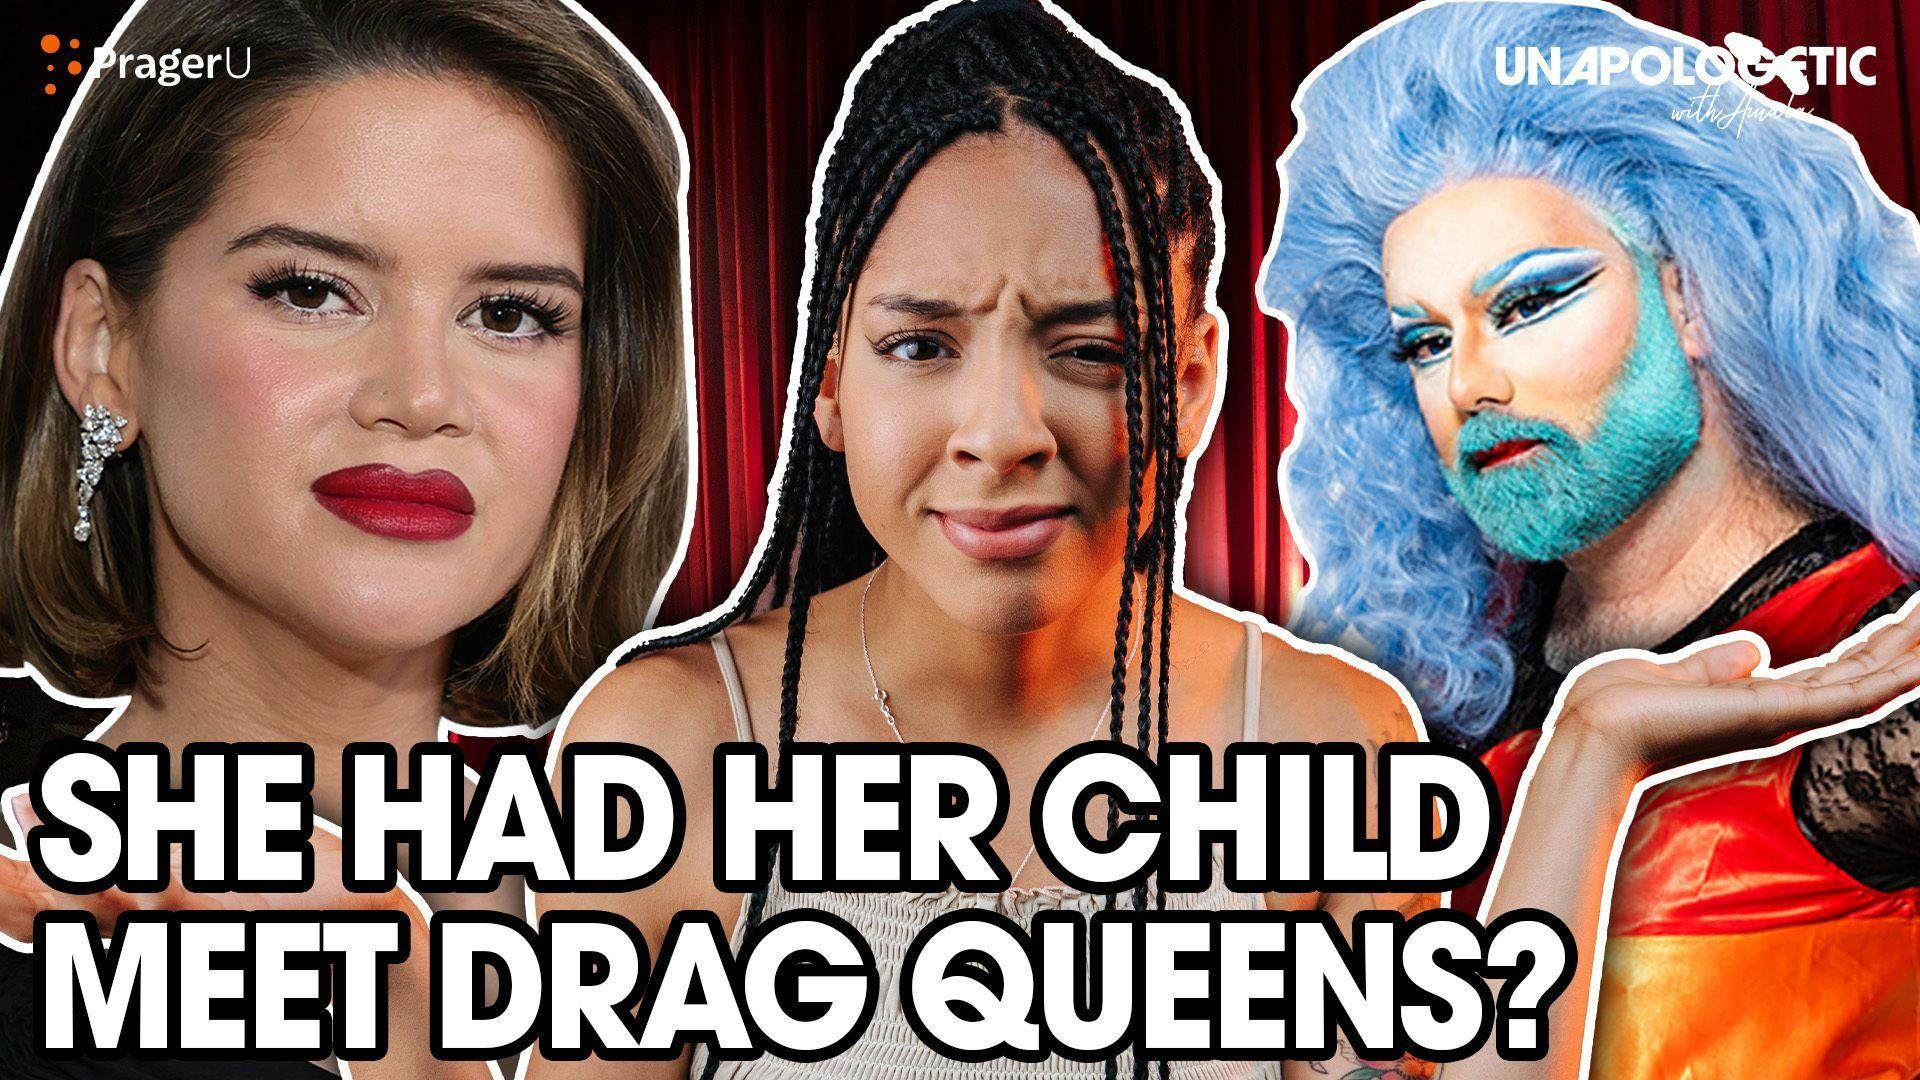 Maren Morris Introduces Her Child to Drag Queens